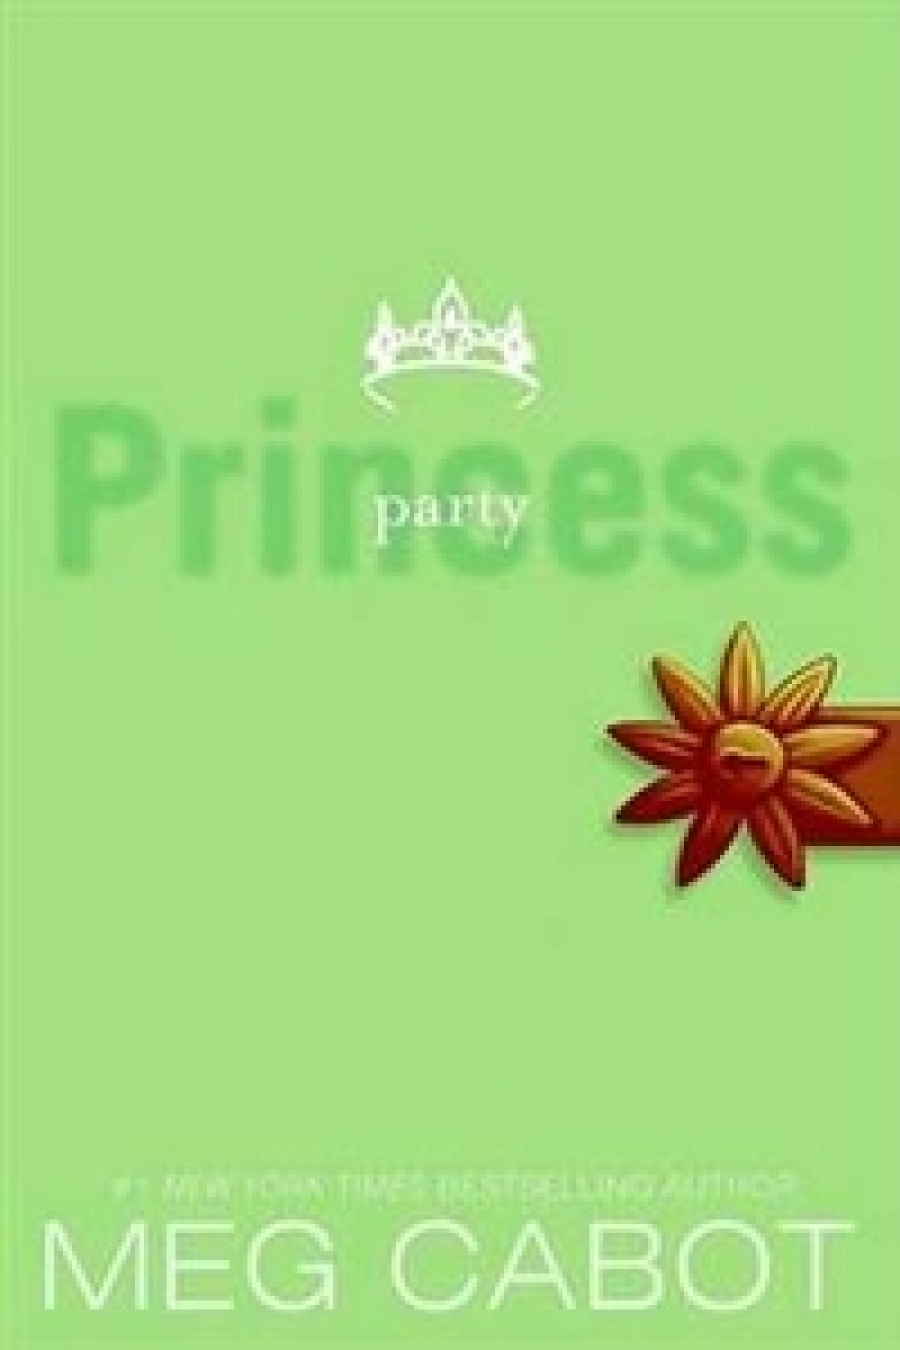 Meg, Cabot Princess Diaries 7: Party Princess 